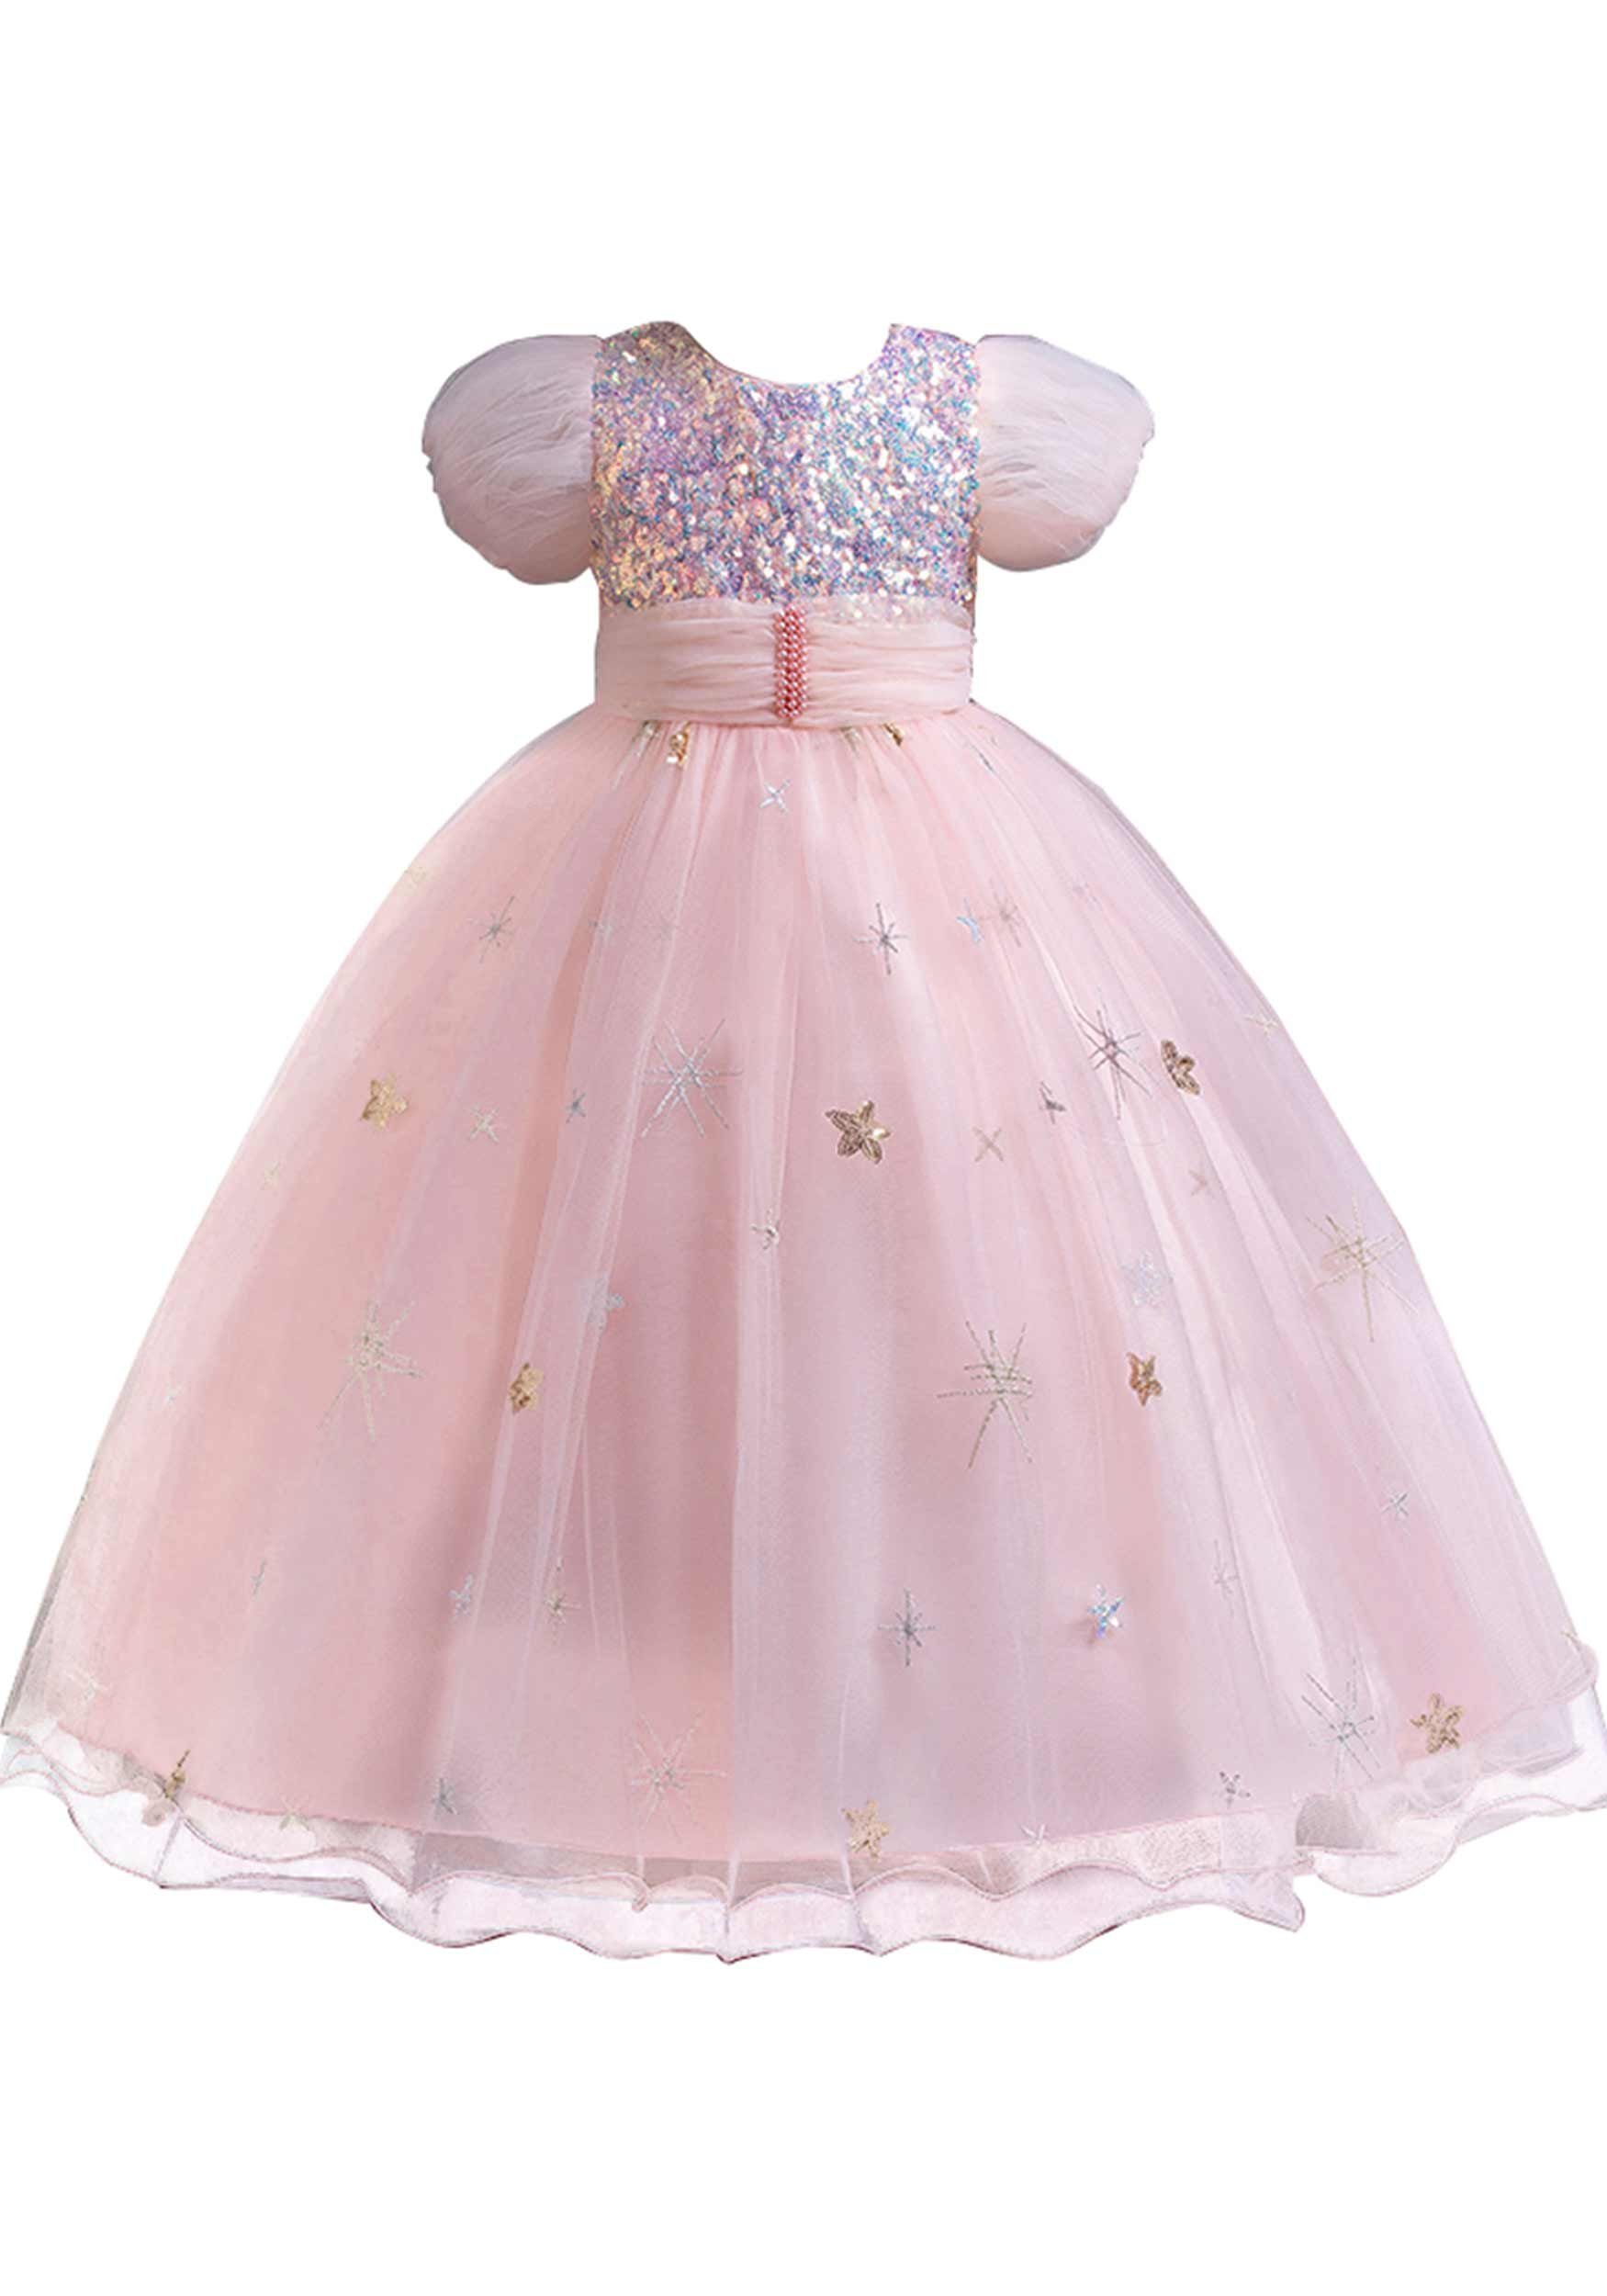 Daisred Abendkleid Tüllkleider Mädchen Prinzessinnenkleider Geburtstagsparty Rosa